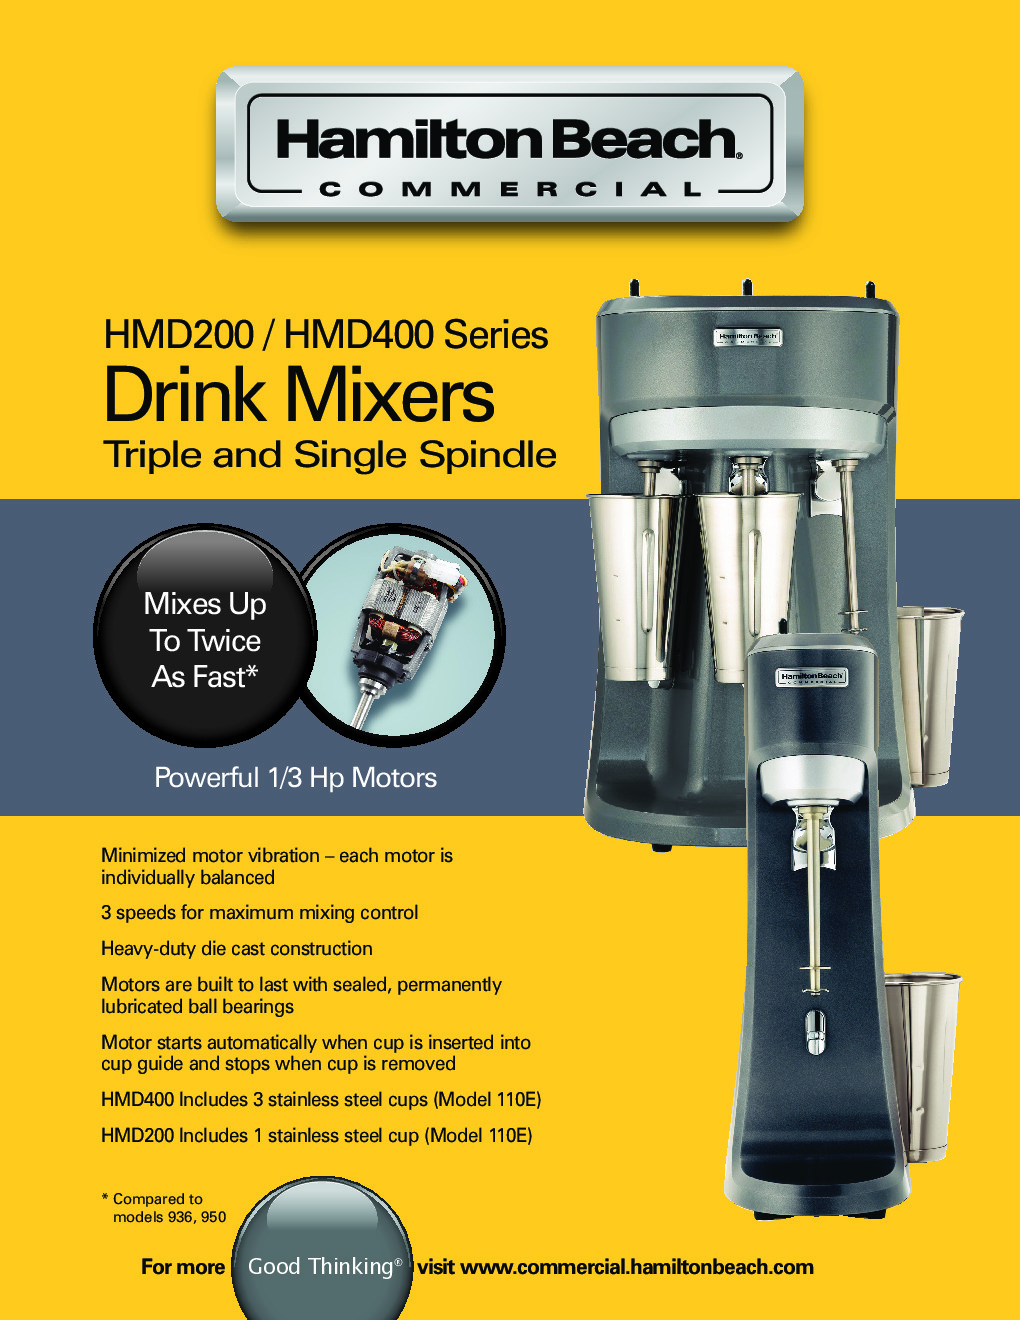 Triple-Spindle Drink Mixer HMD400 Series - Milkshake Maker